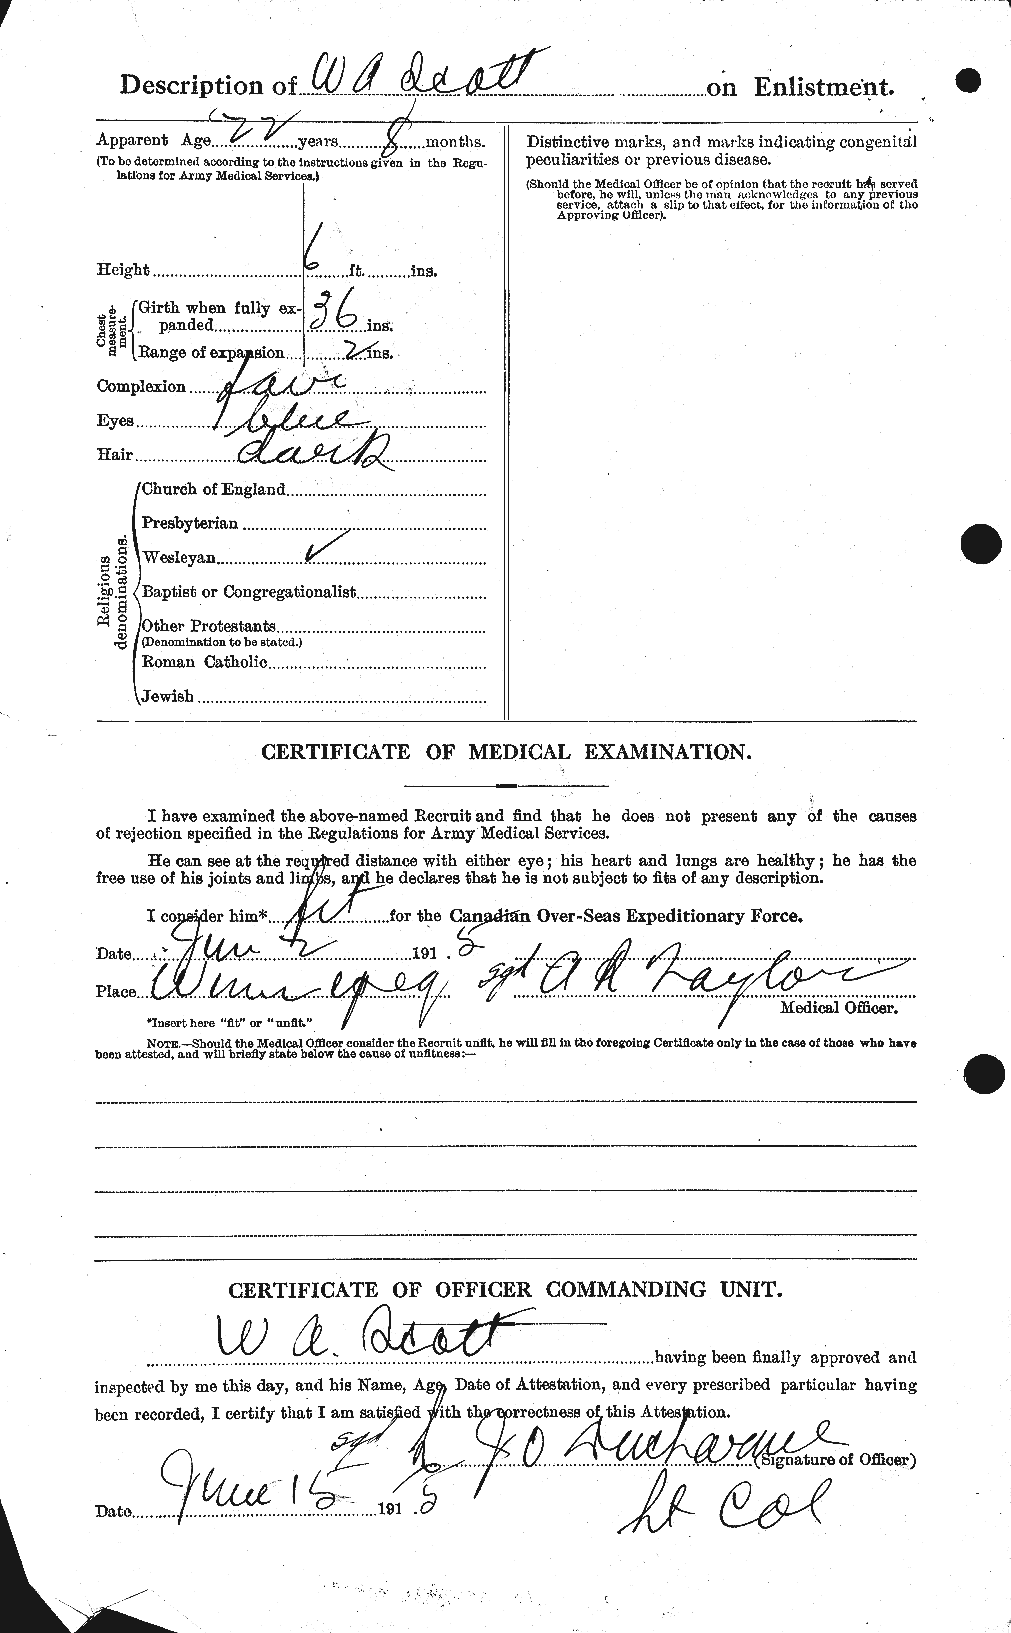 Dossiers du Personnel de la Première Guerre mondiale - CEC 088198b